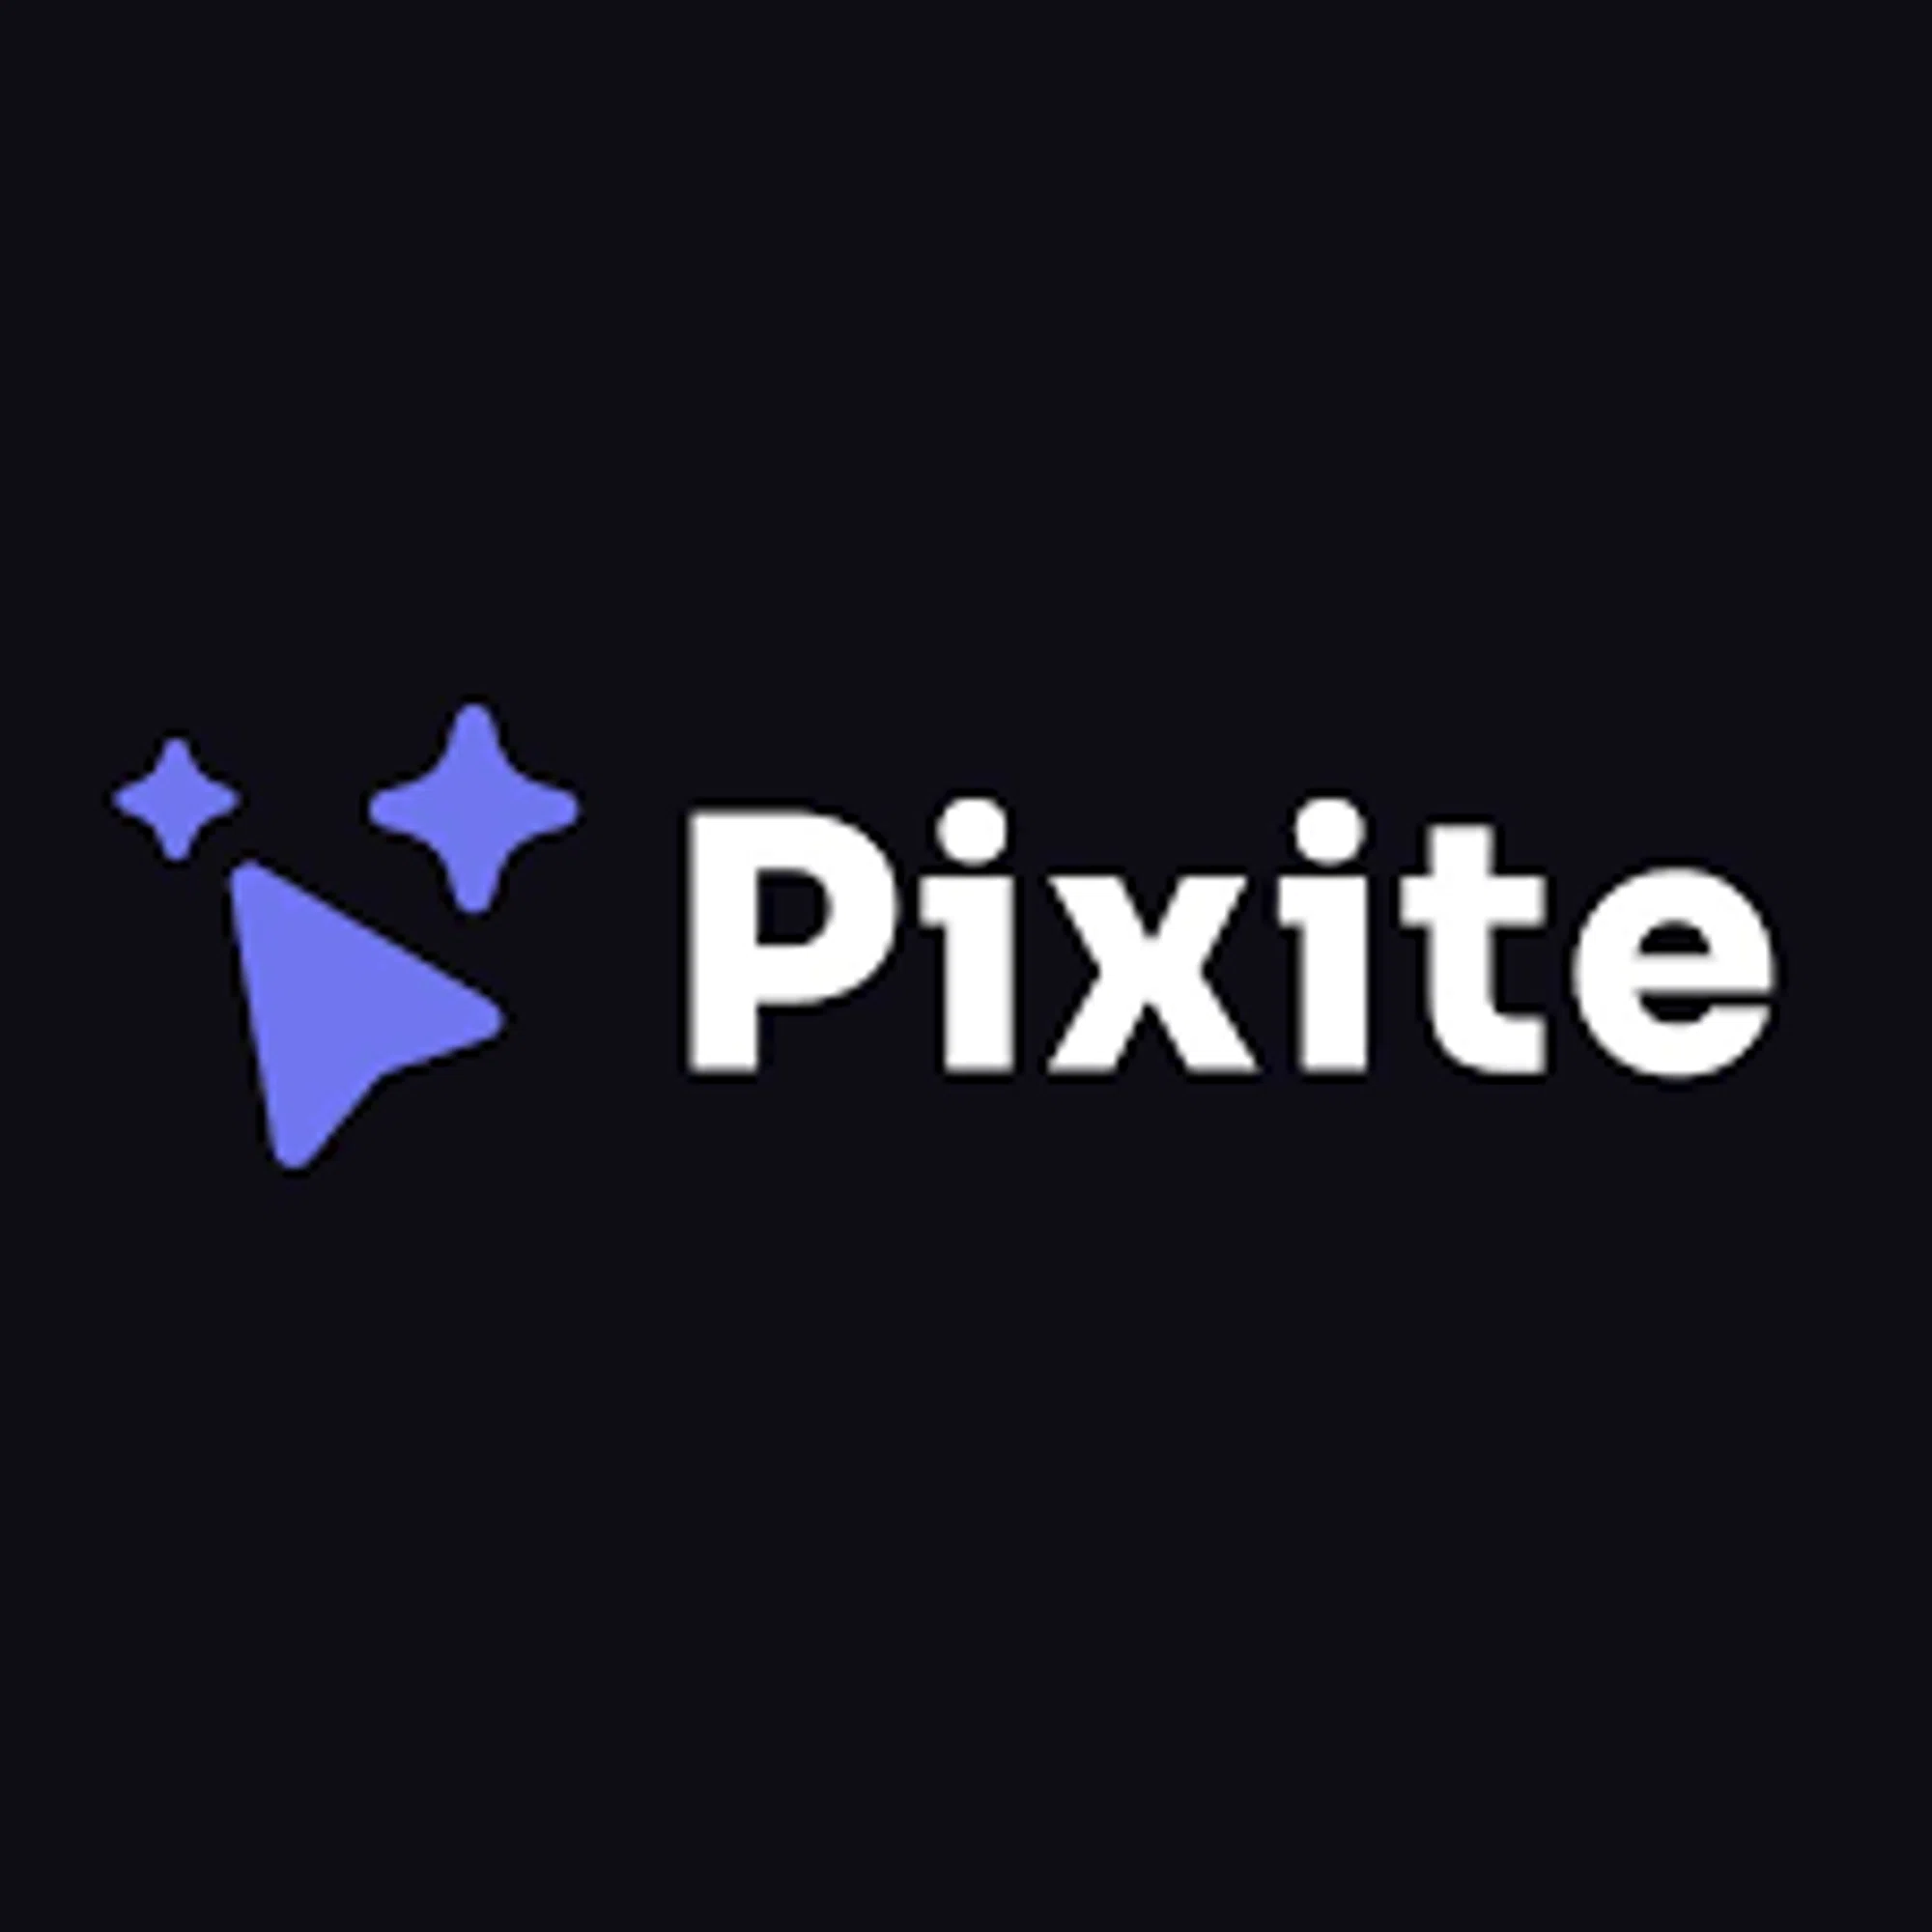 Pixite AI